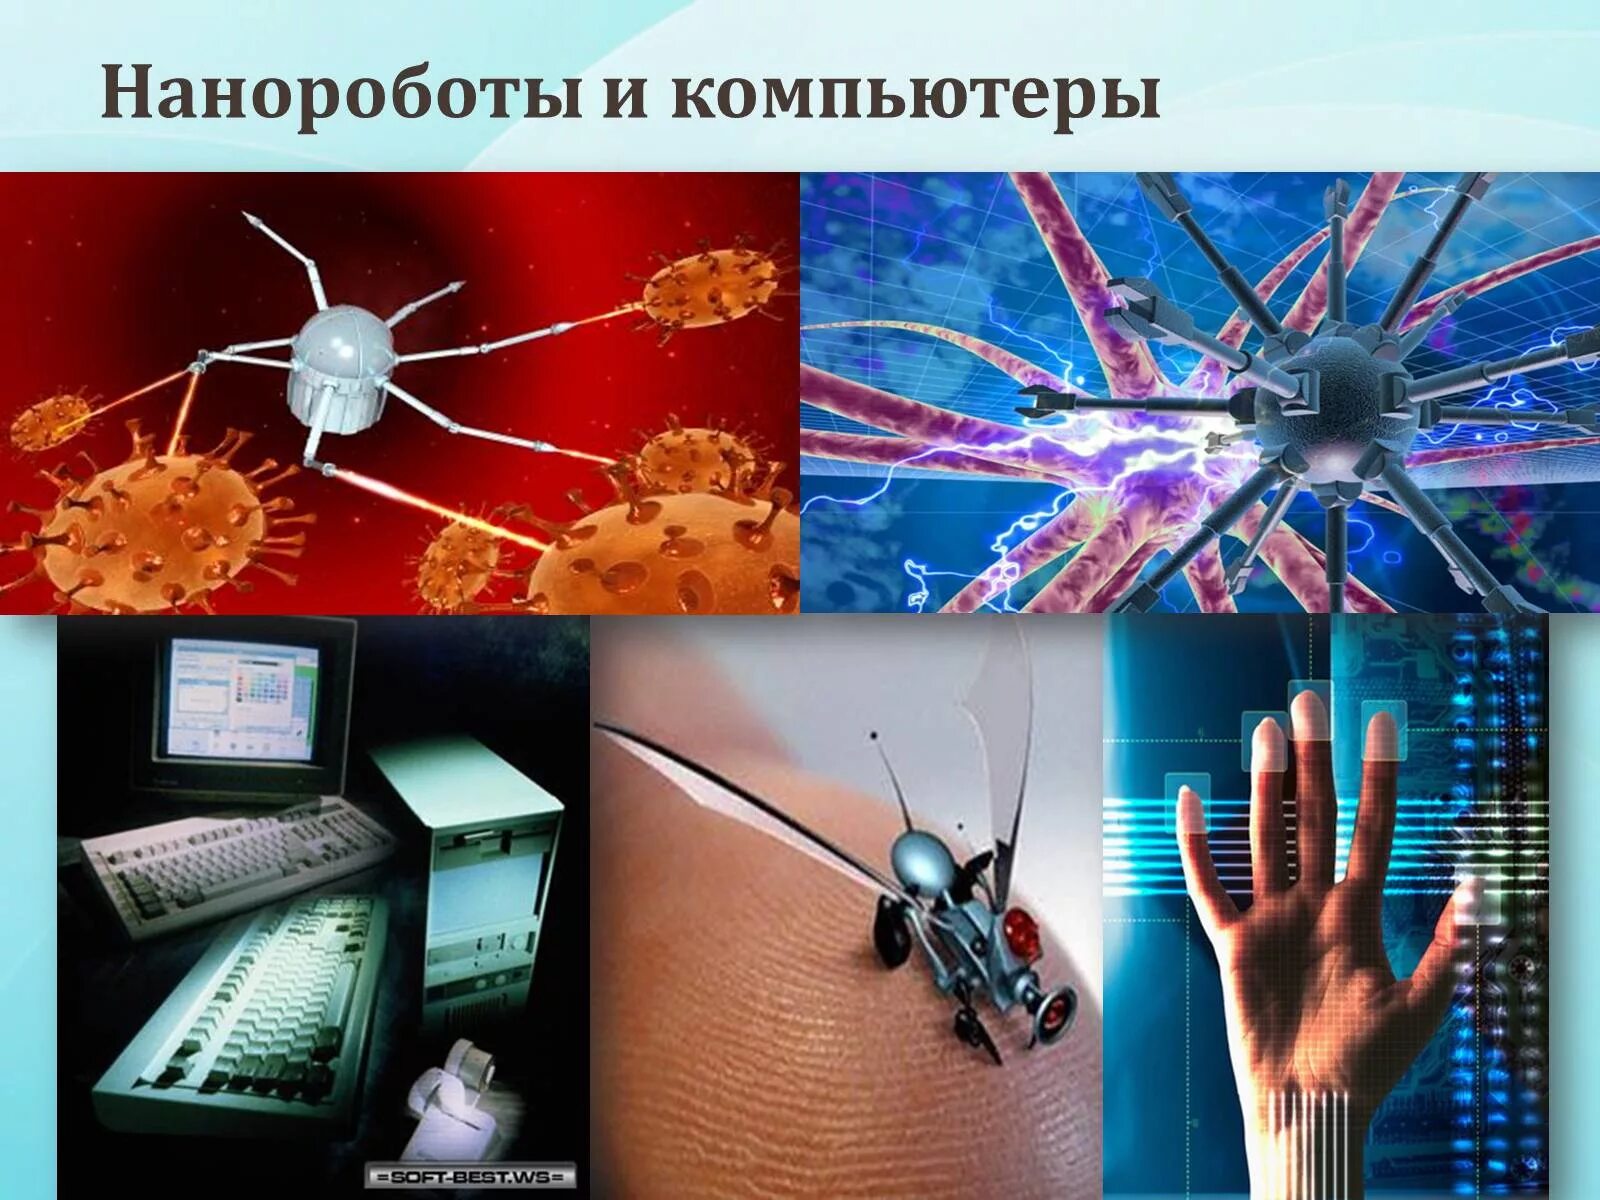 Изображения на тему нанотехнологии. Нанороботы в компьютерах. Нанотехнологии в быту. Нанотехнологии презентация. Про нанотехнологии